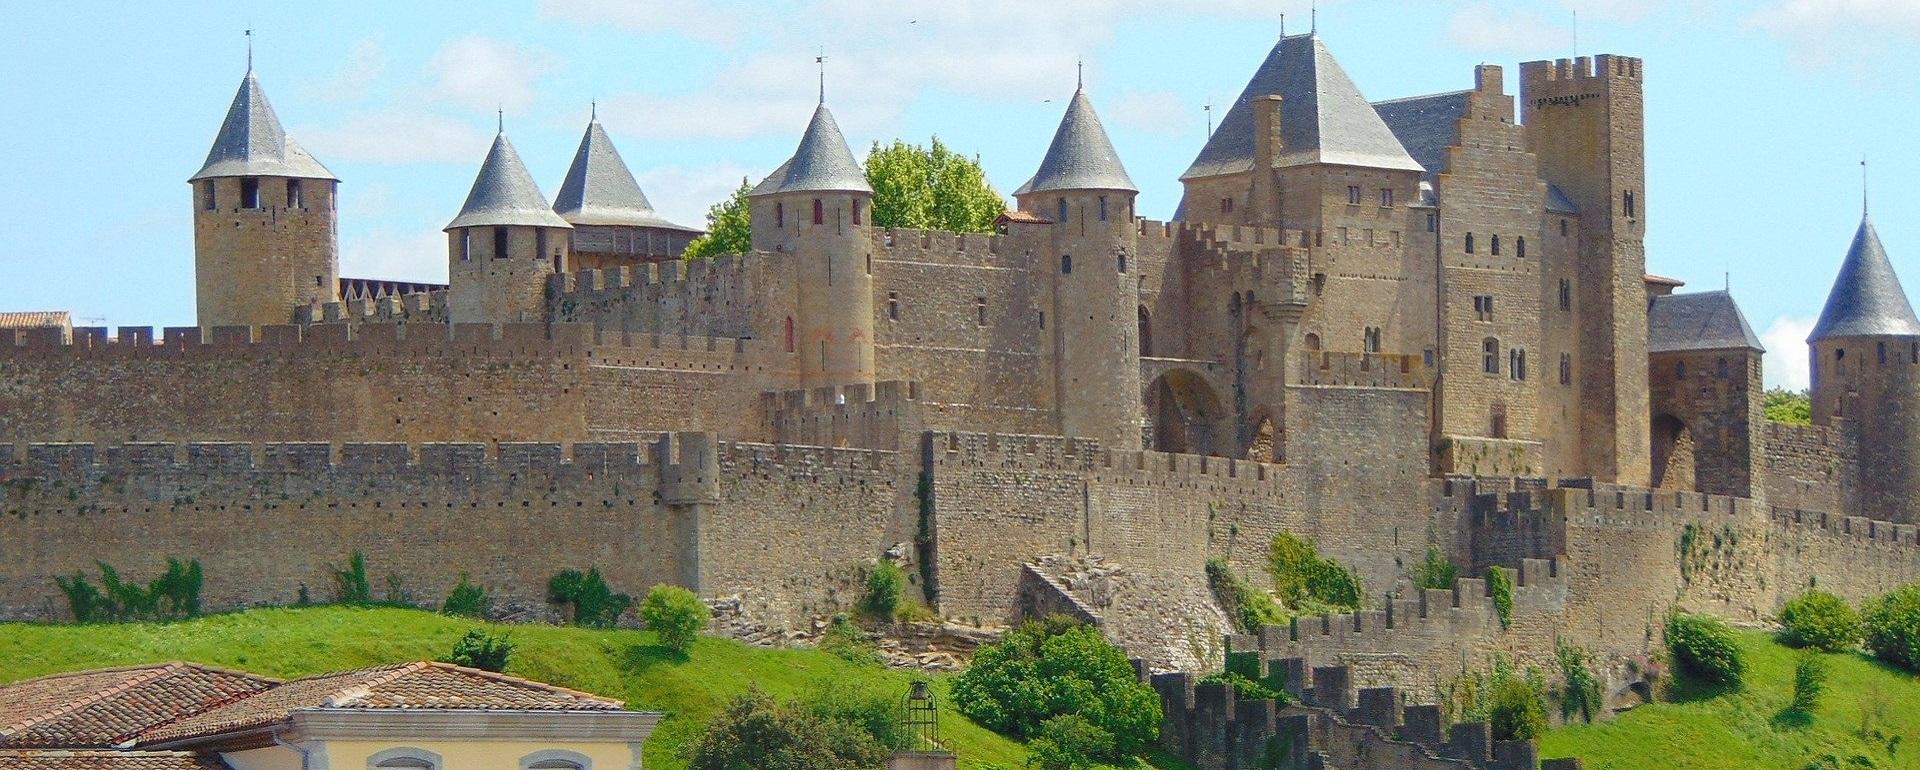 Cité médiévale de Carcassonne - UNESCO